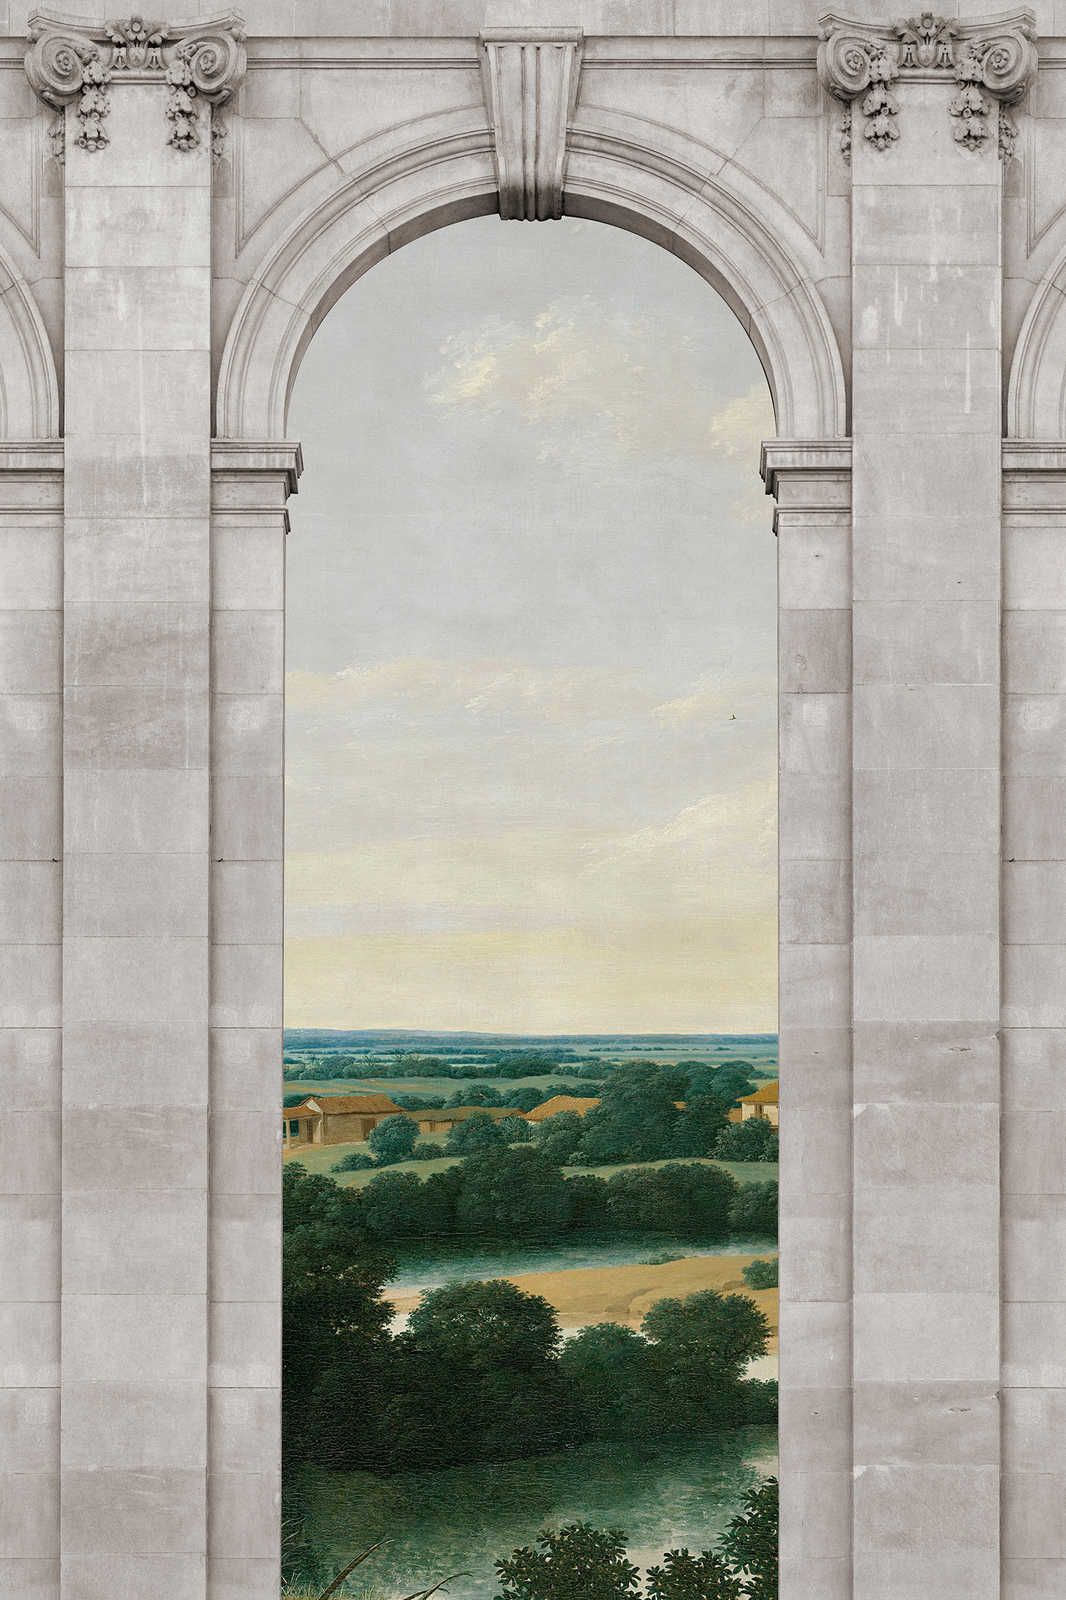             Castello 2 - Window Canvas Painting Arch & View Landscape - 1.20 m x 0.80 m
        